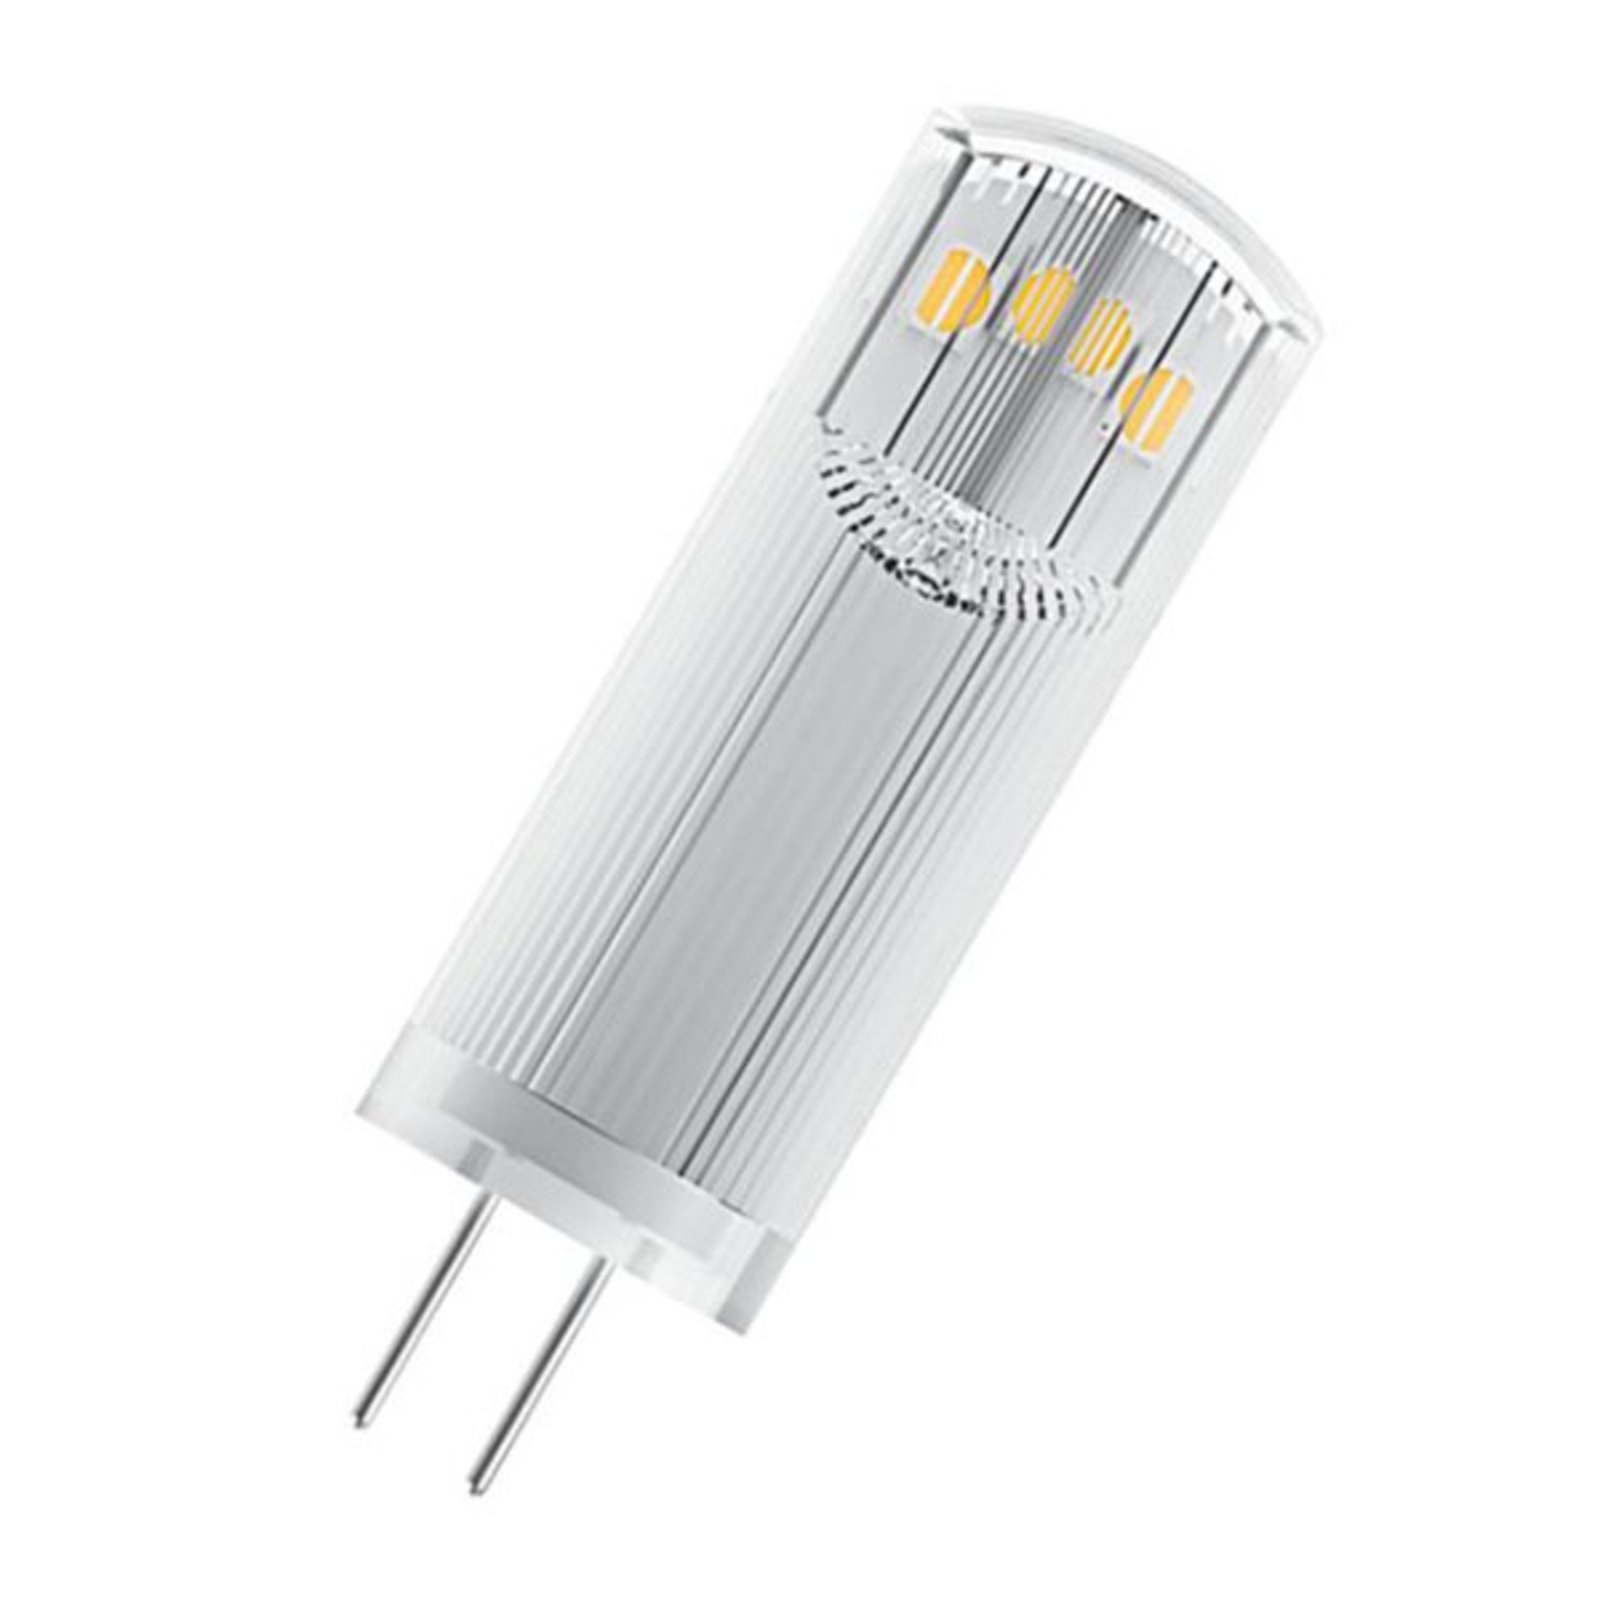 OSRAM bi-pin LED bulb G4 1.8 W 2,700K clear 2-pack